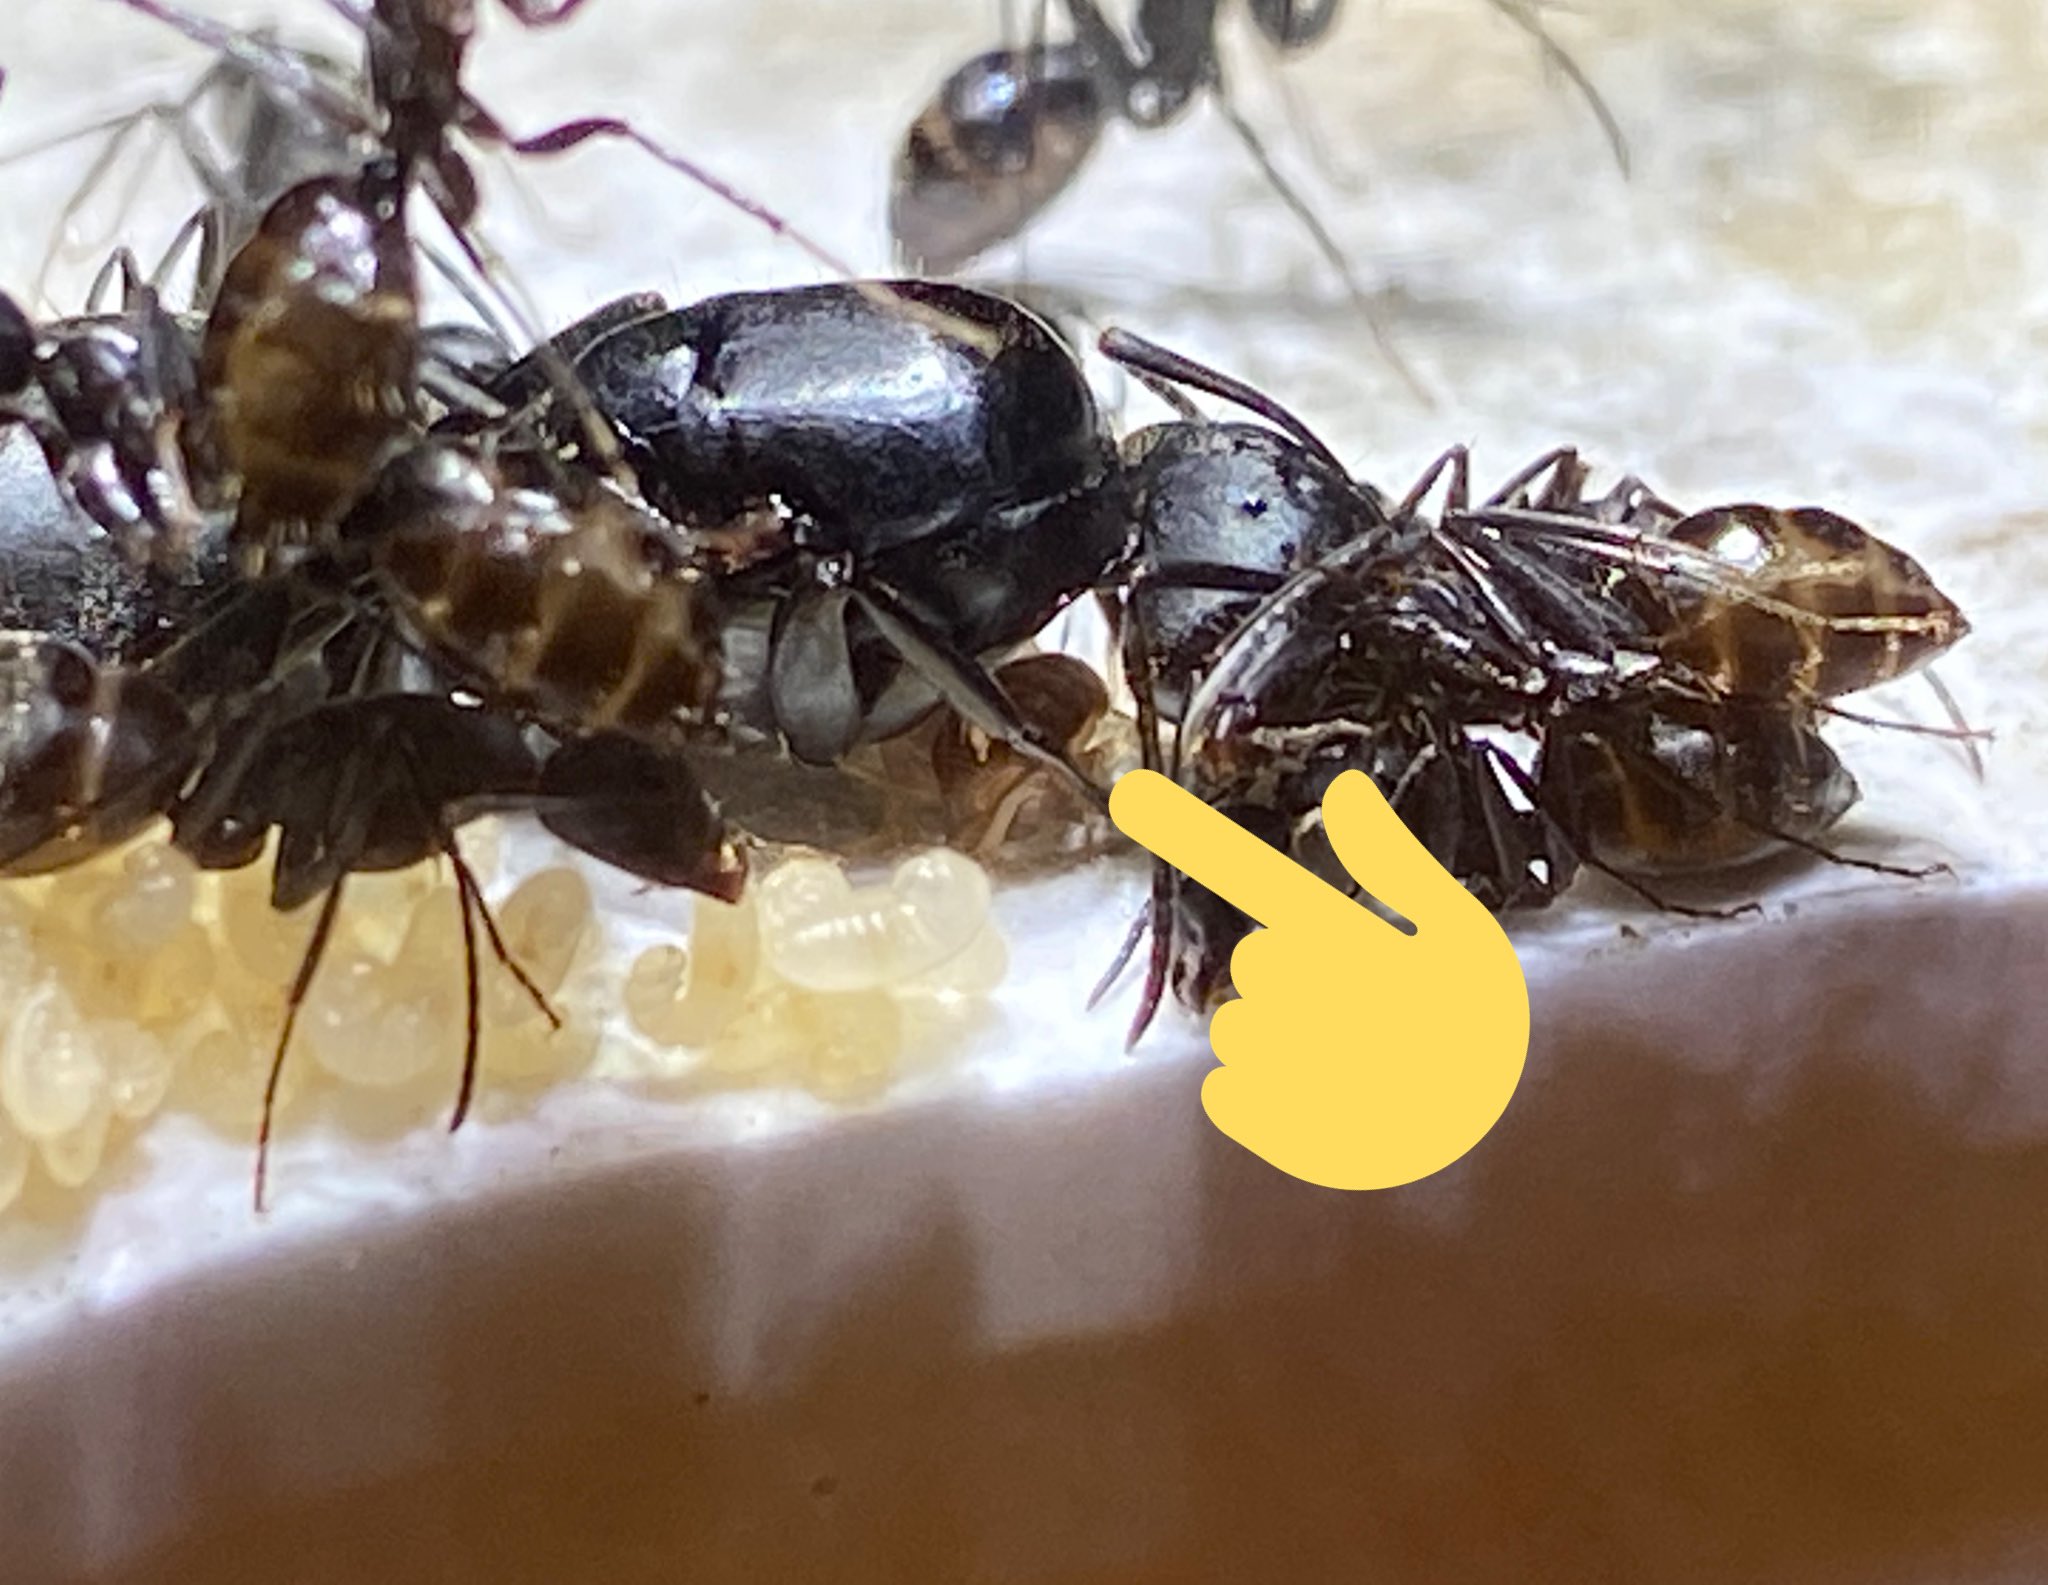 ありプロ トビケの巣から捕まえてきたアリヅカコオロギをクロオオアリの巣に入れたら 女王の下でベストポジションを取って周りのアリと仲良くやってます T Co 8u06dkxvbx Twitter